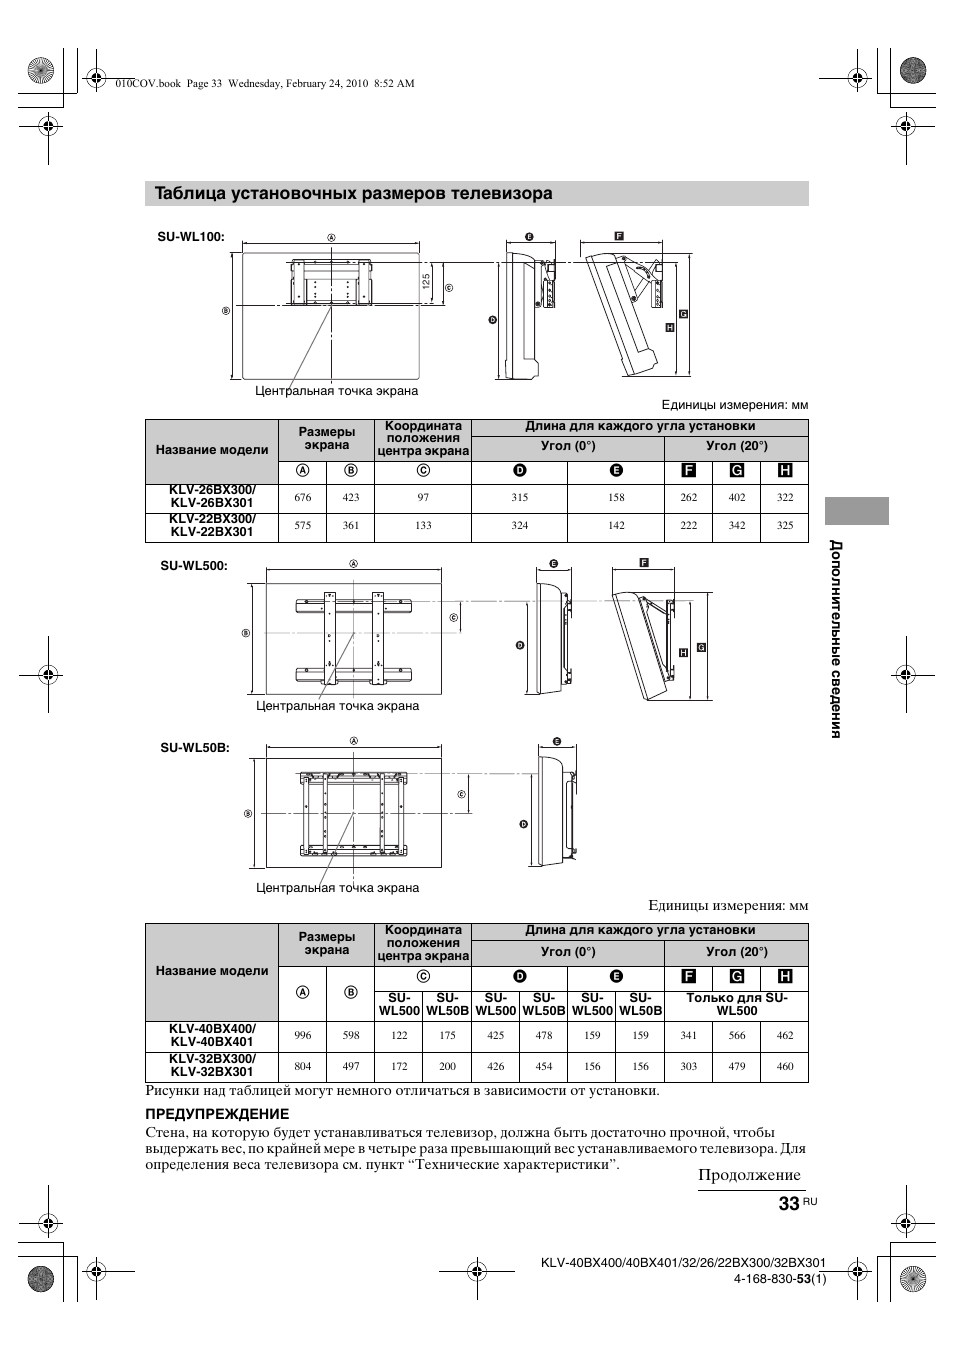 Таблица установочных размеров телевизора, Продолжение | Инструкция по эксплуатации Sony KLV-40BX400 | Страница 33 / 40